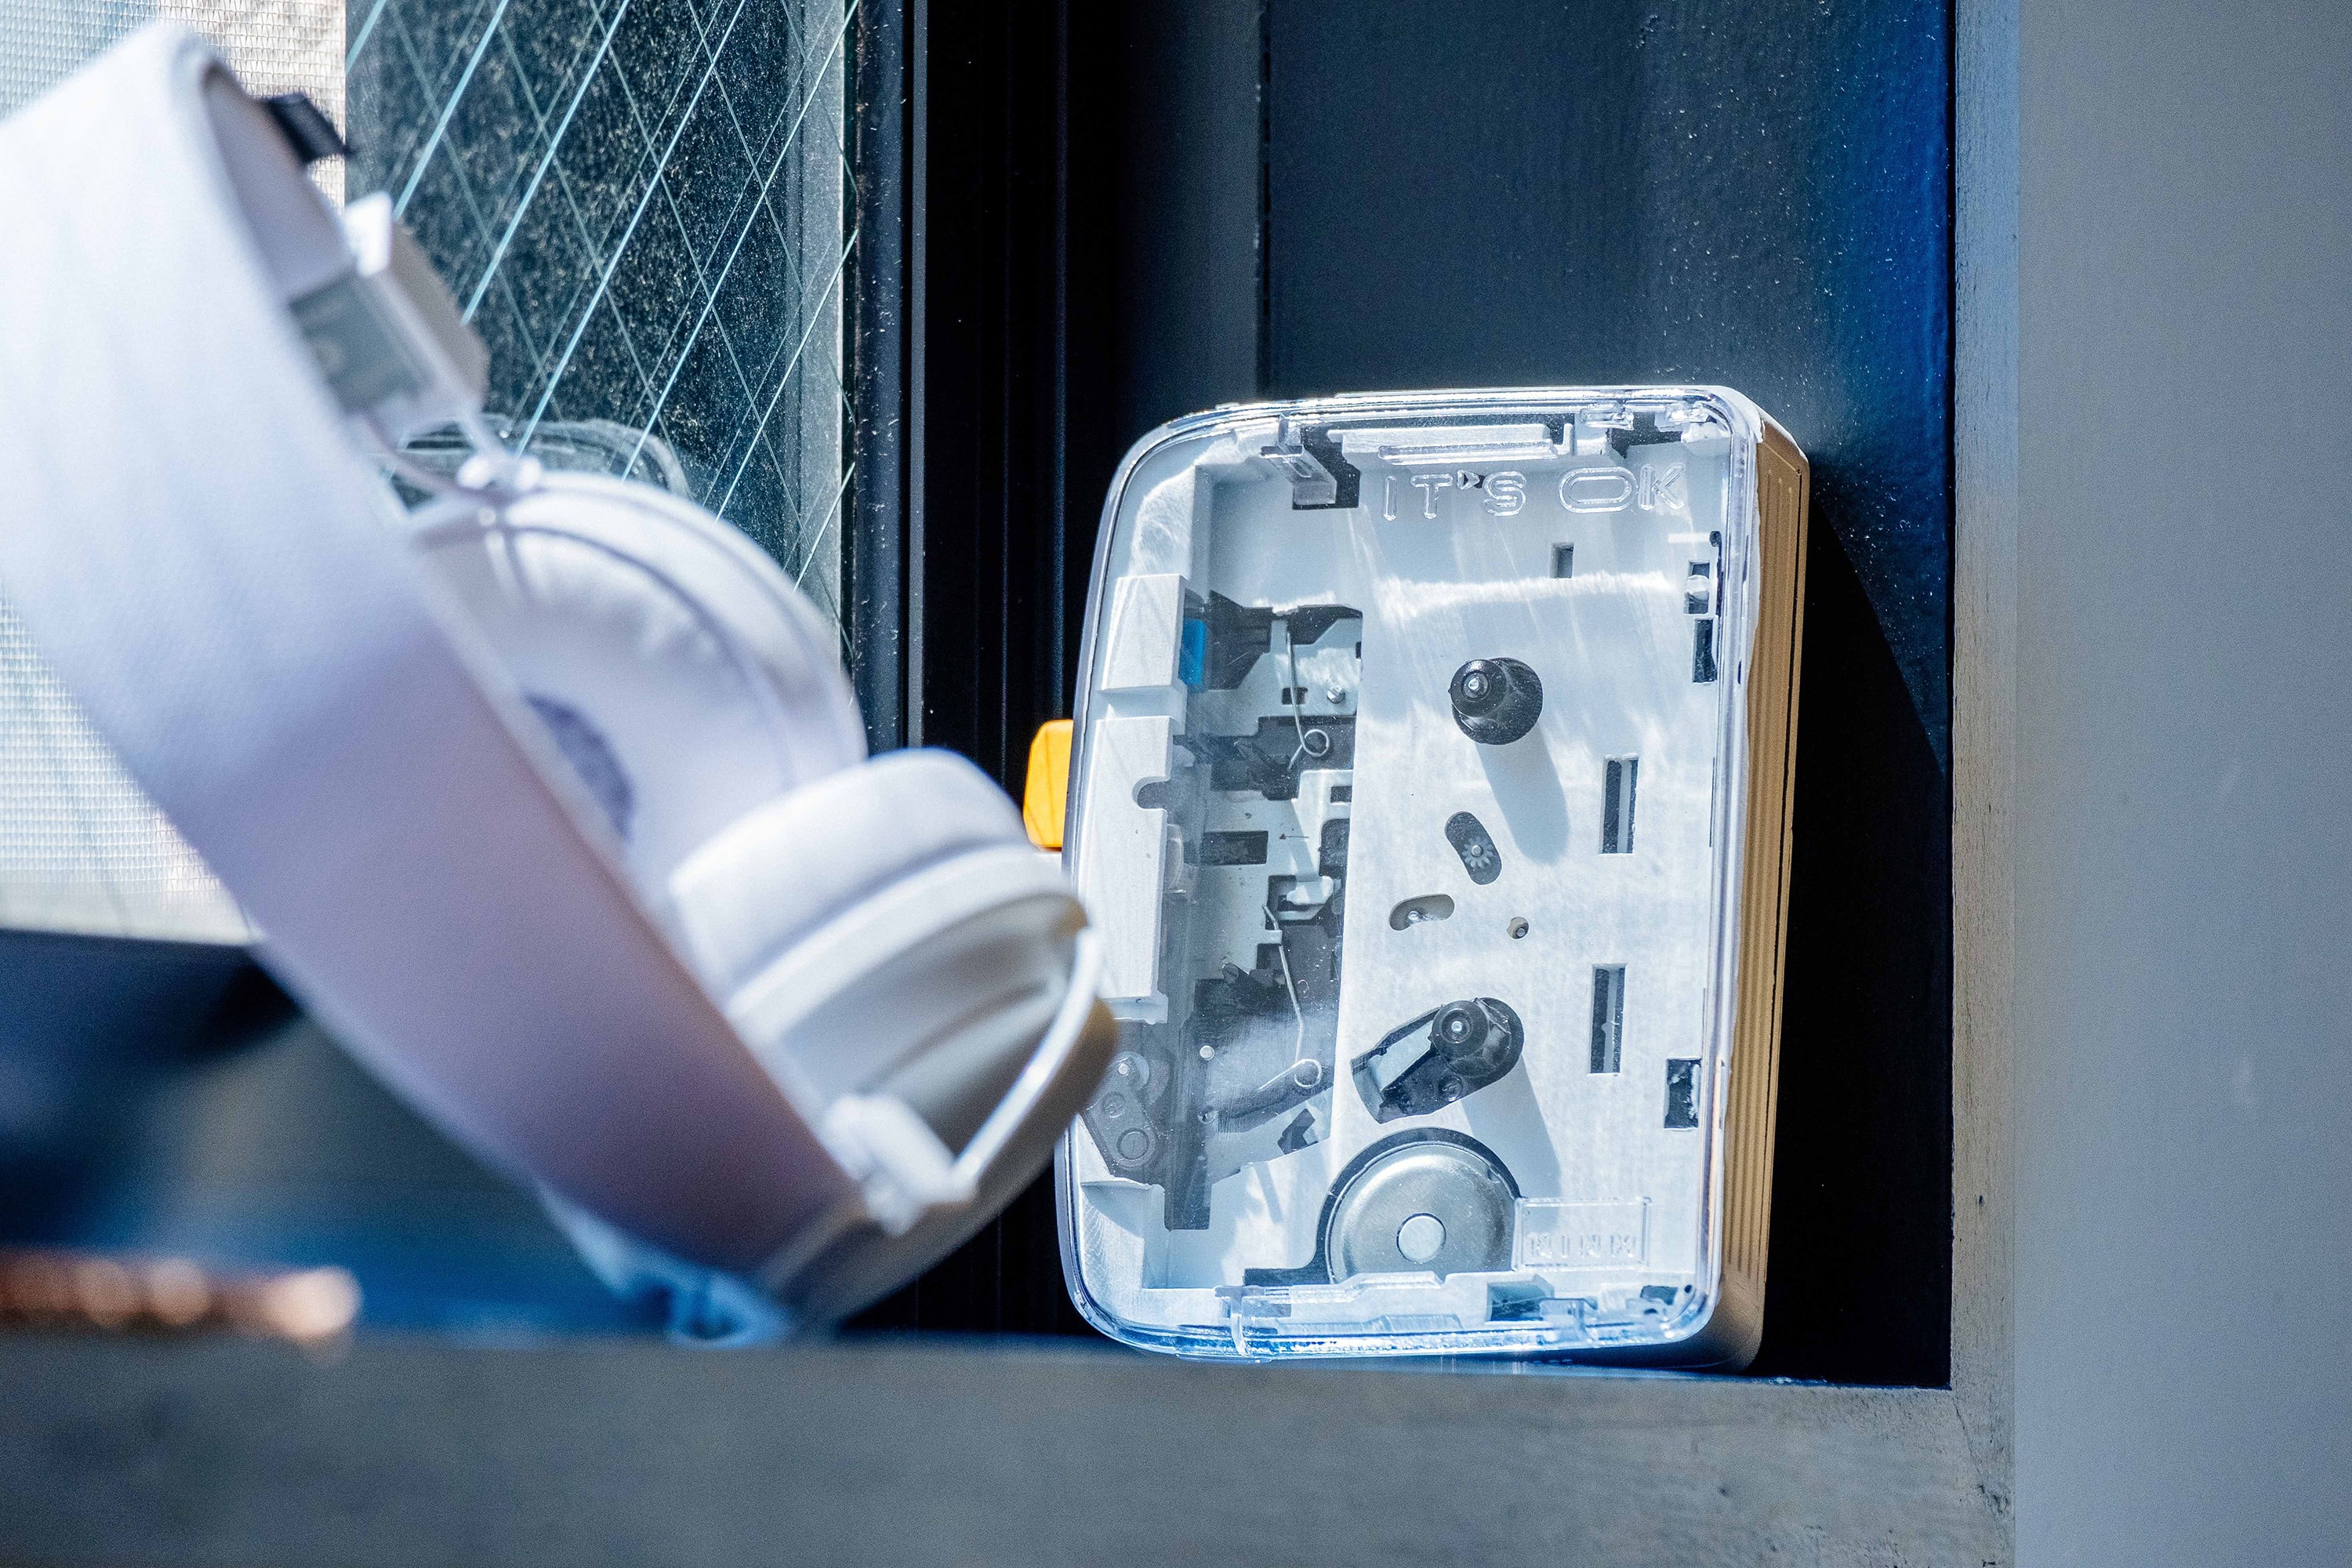 復刻懷舊－IT’S OK 推出全球首部藍牙 5.0 可攜式卡式錄音機